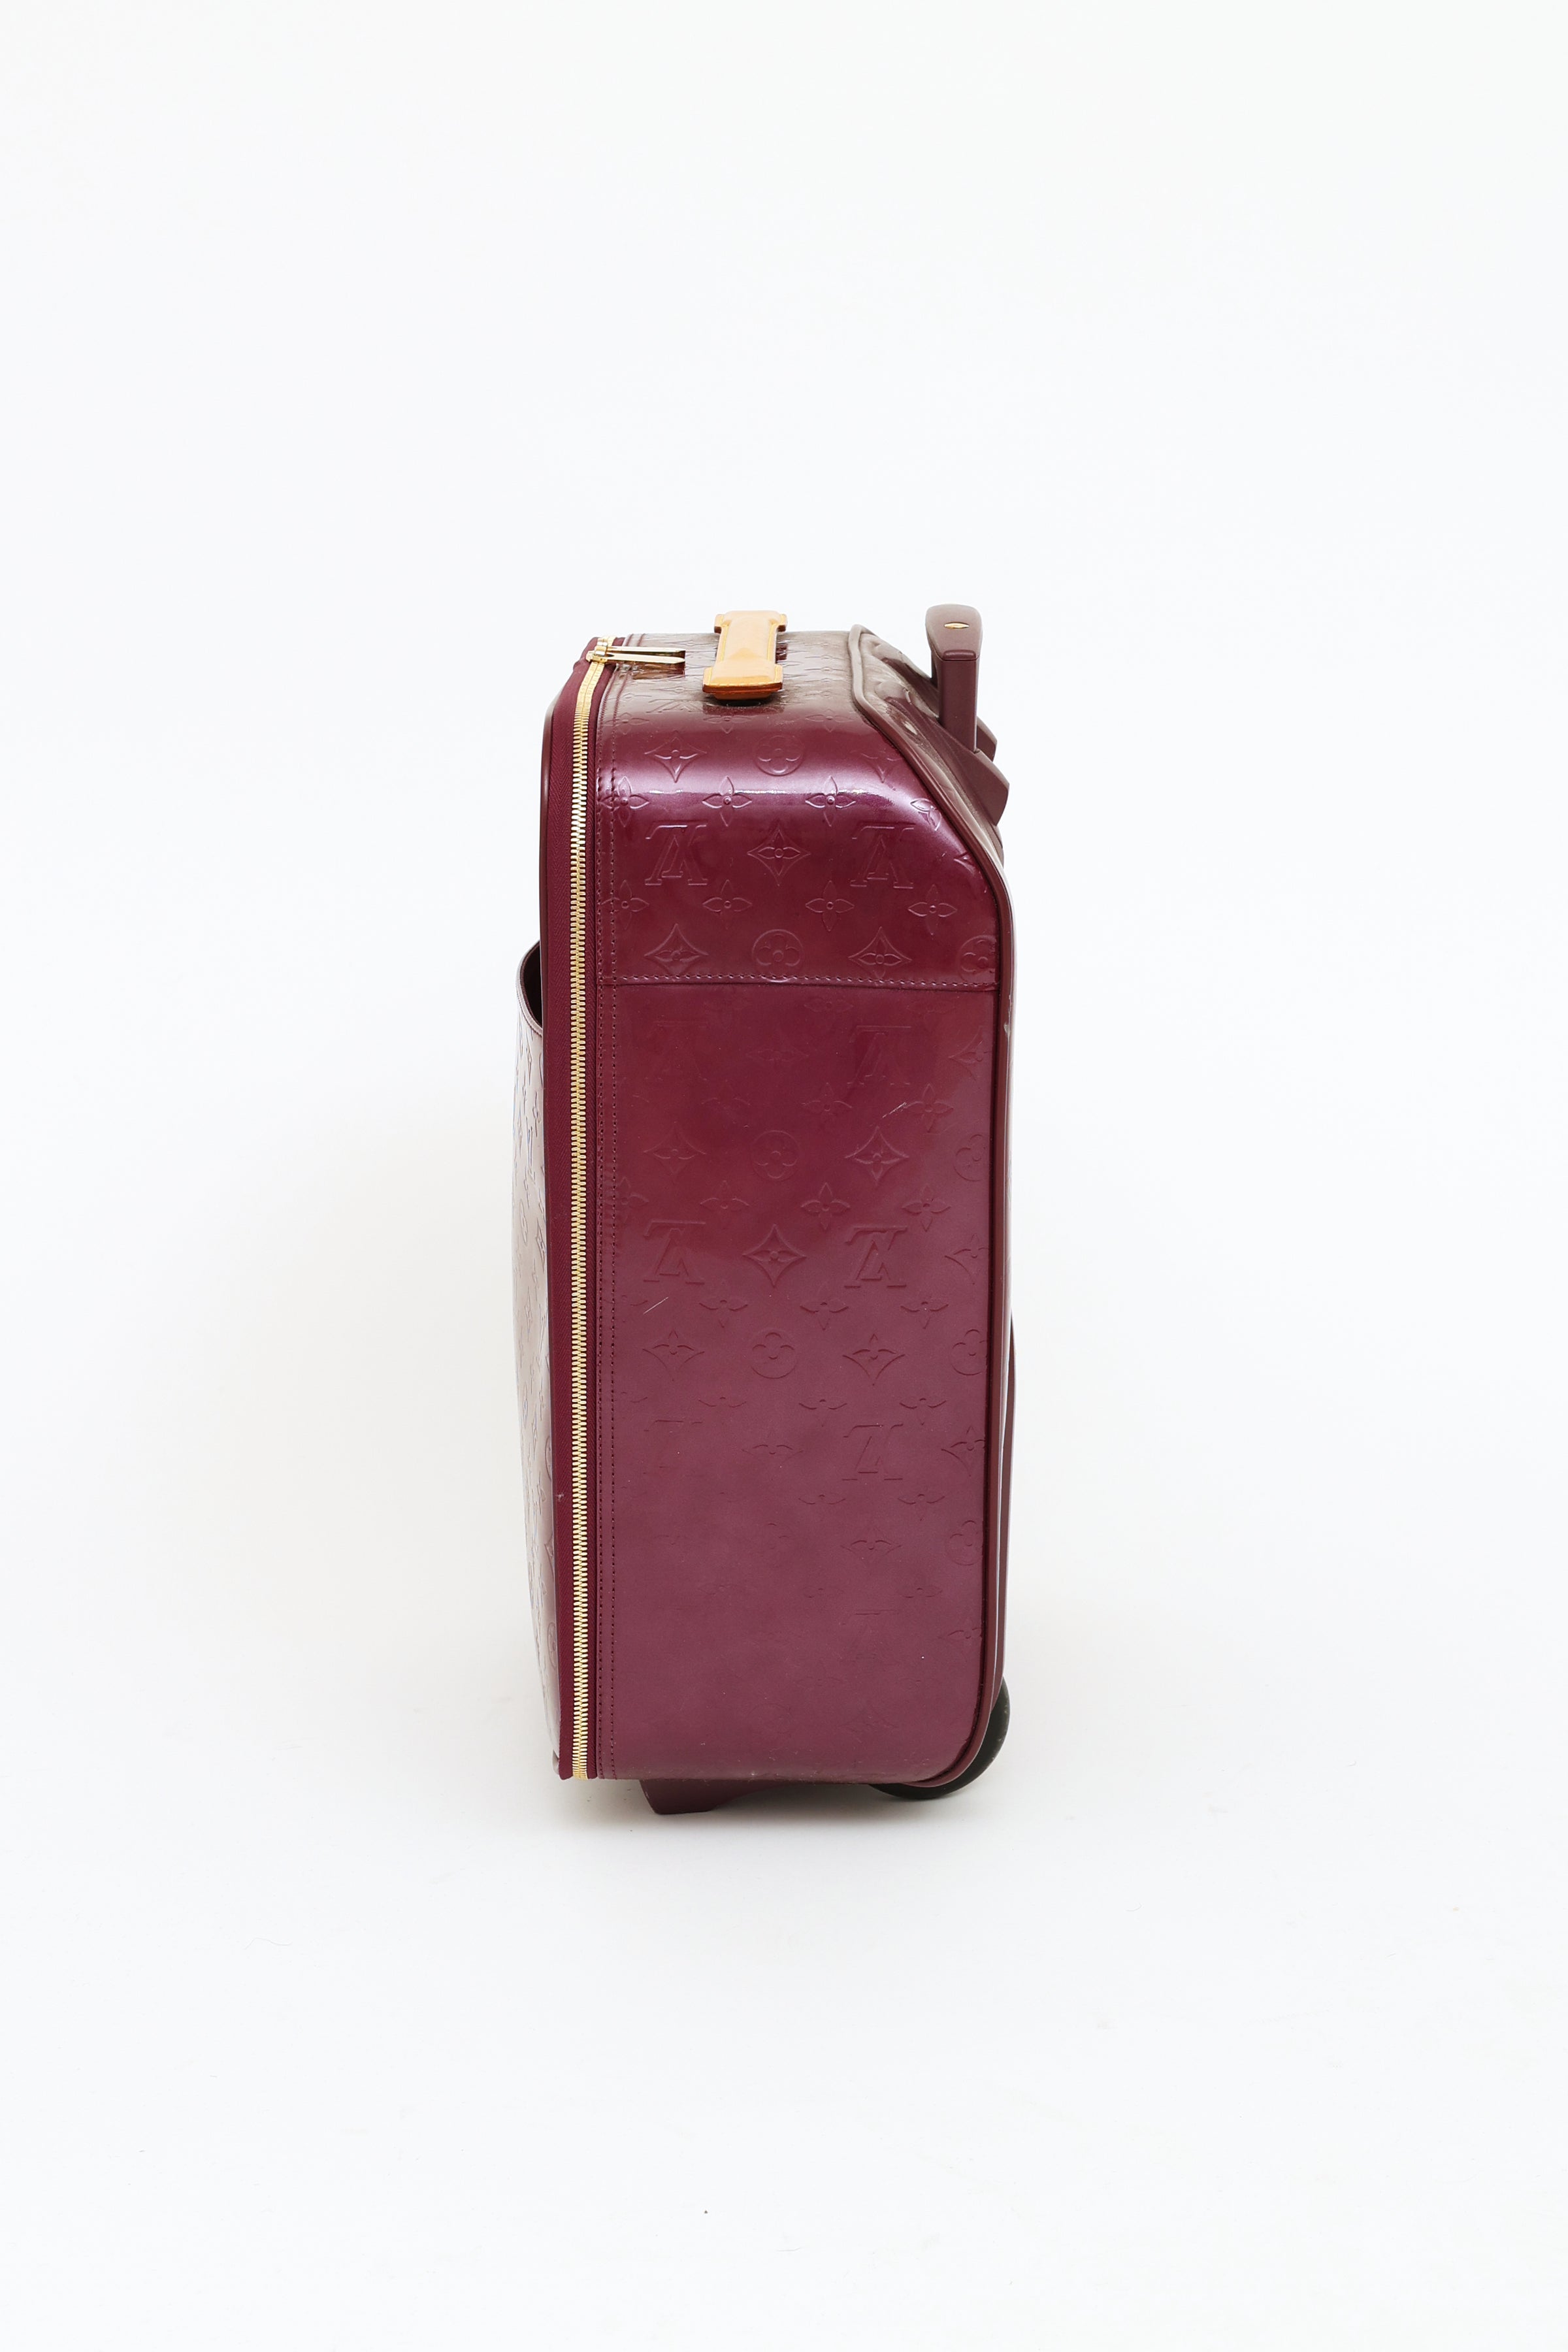 Louis Vuitton // Violette Vernis Pegase 45 Suitcase – VSP Consignment